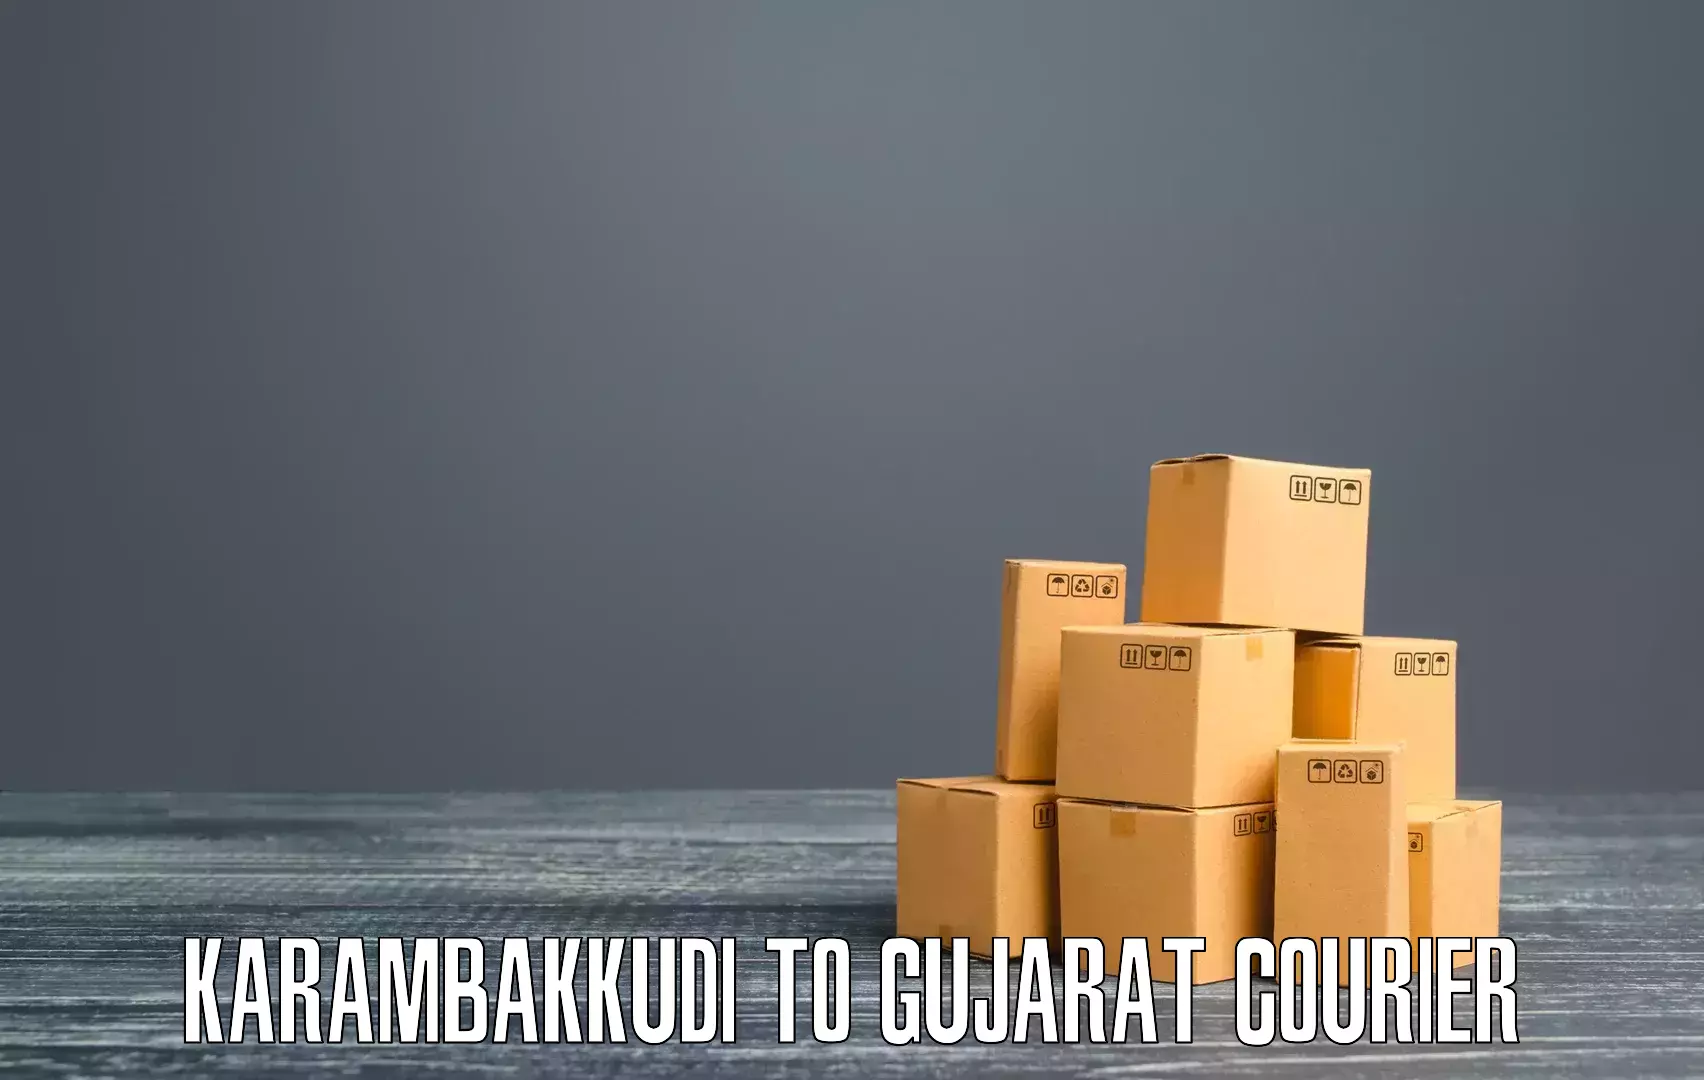 Express mail solutions Karambakkudi to Gujarat